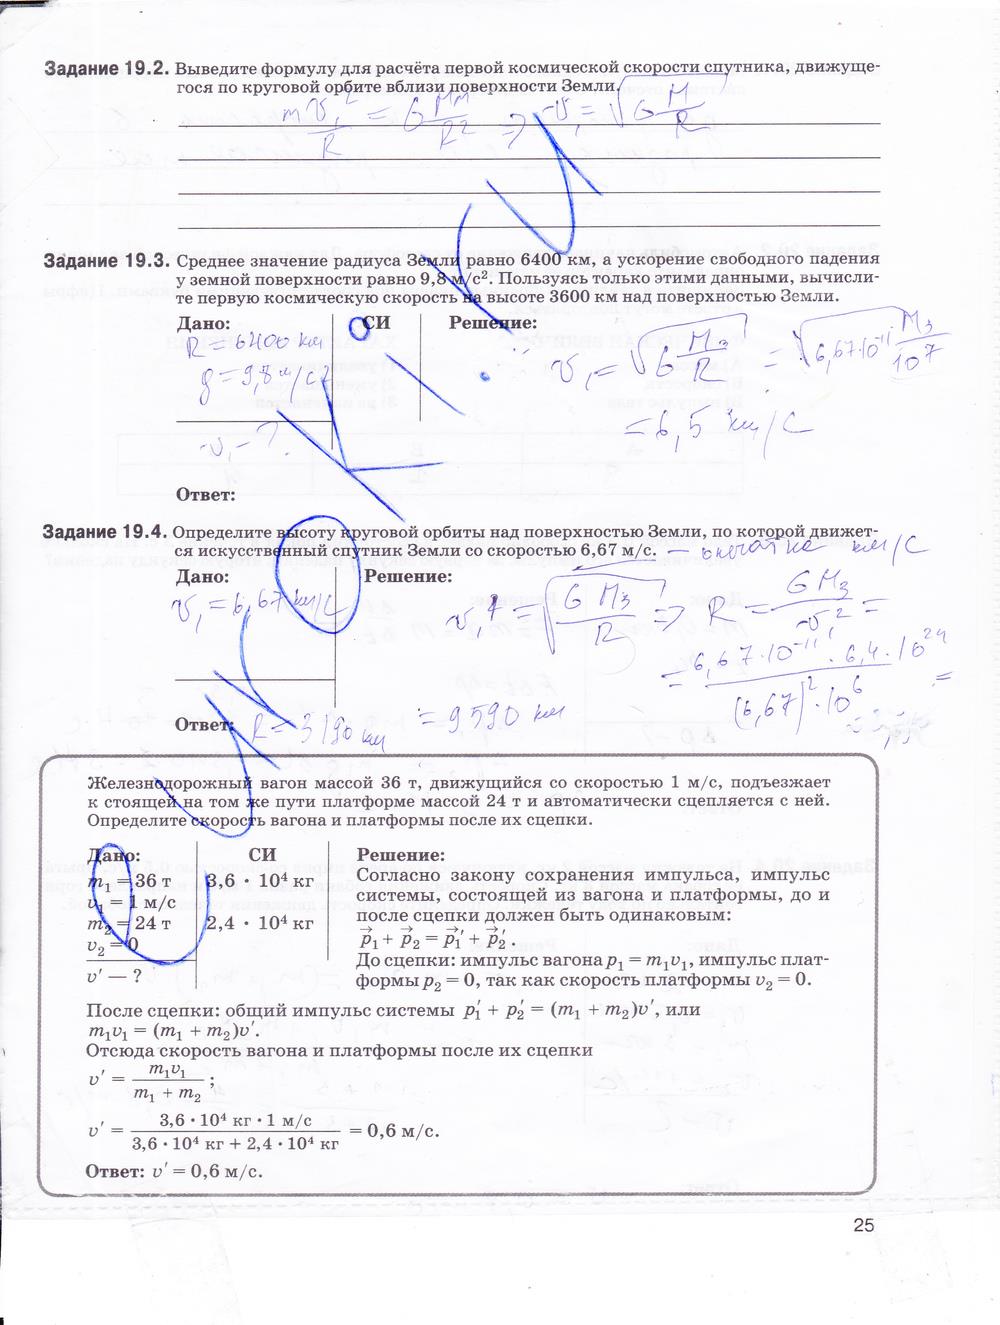 гдз 9 класс рабочая тетрадь страница 25 физика Гутник, Власова